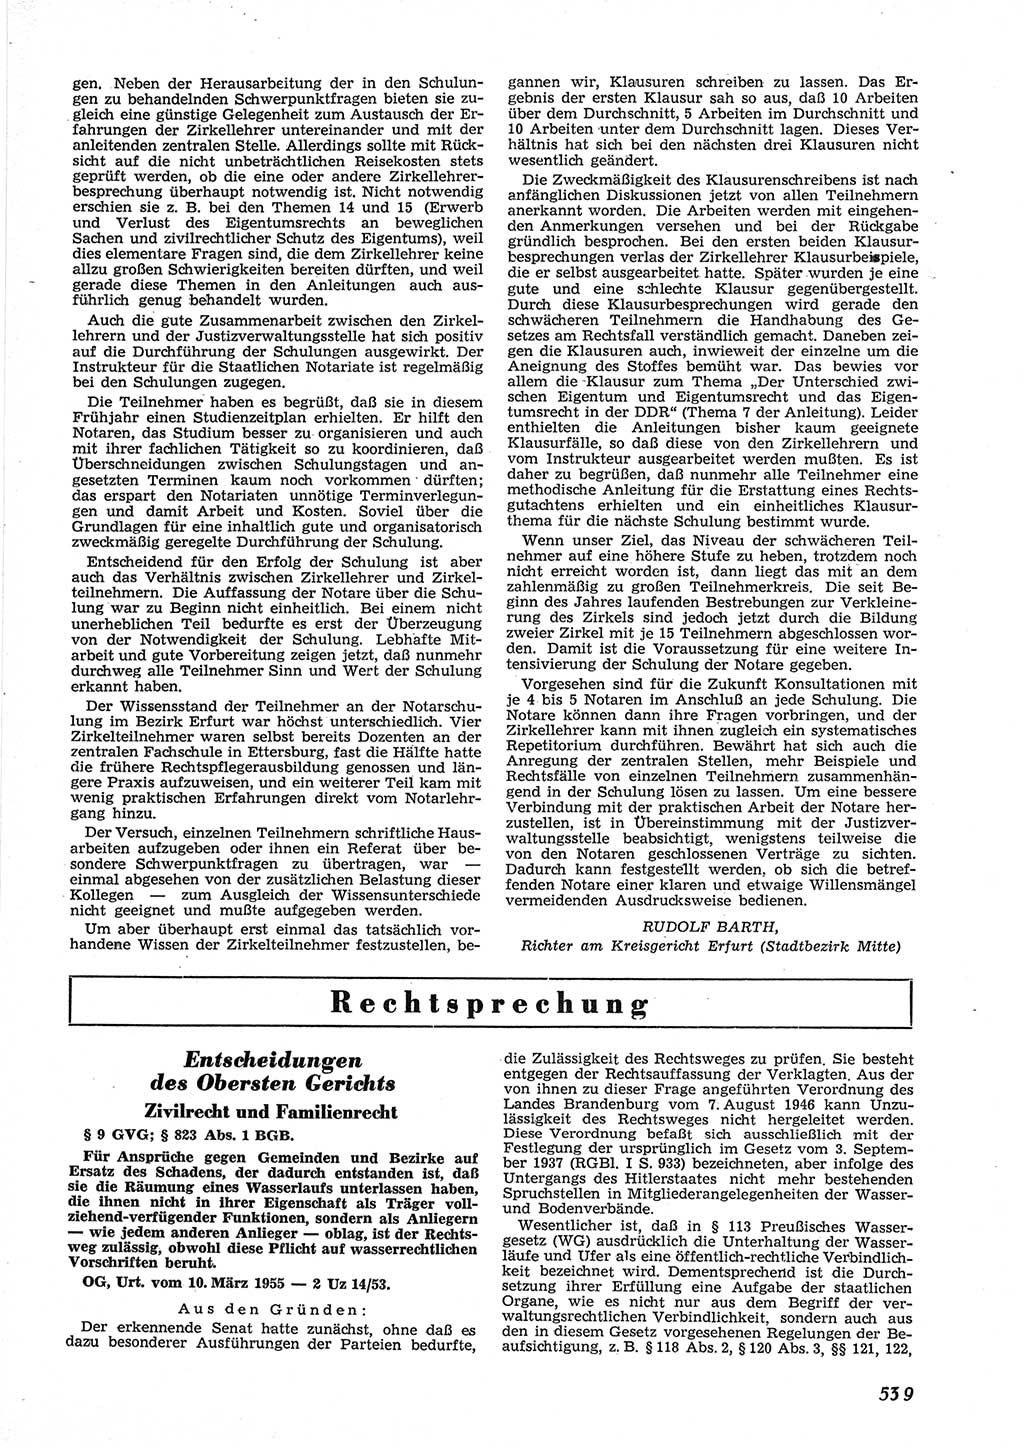 Neue Justiz (NJ), Zeitschrift für Recht und Rechtswissenschaft [Deutsche Demokratische Republik (DDR)], 9. Jahrgang 1955, Seite 539 (NJ DDR 1955, S. 539)